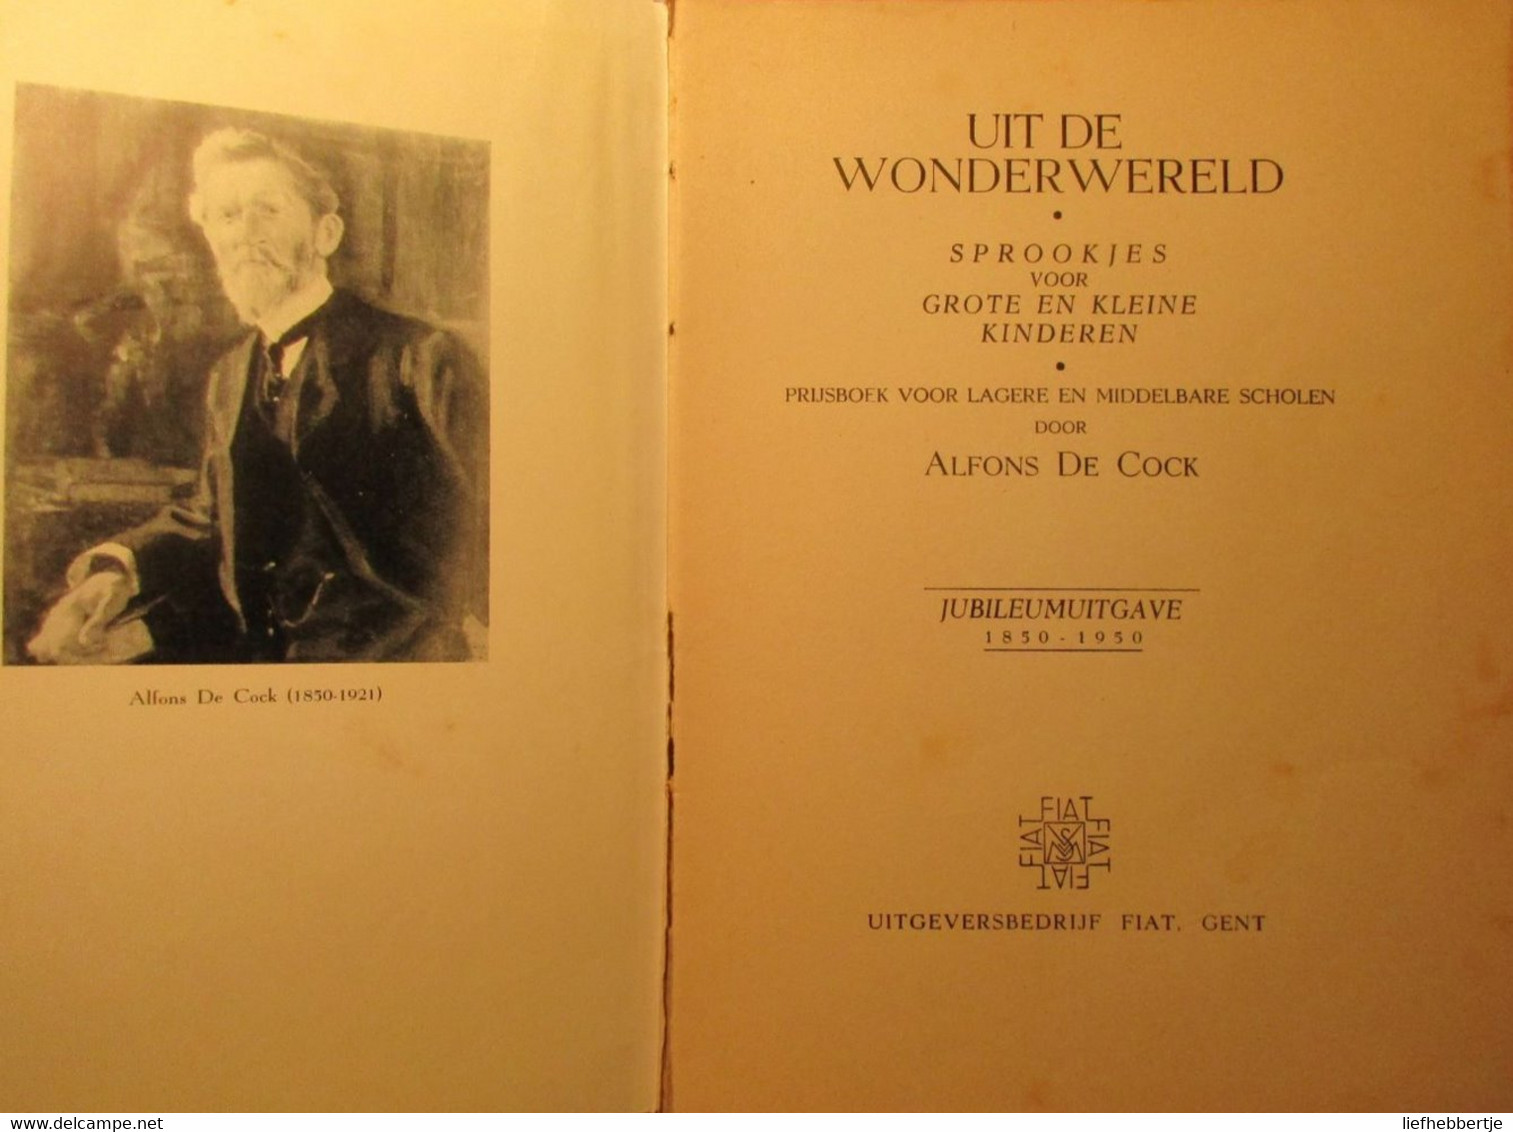 Uit De Wonderwereld - Sprookjes Voor Grote En Kleine Kinderen - Door Alfons De Cock - 1950 - Antique